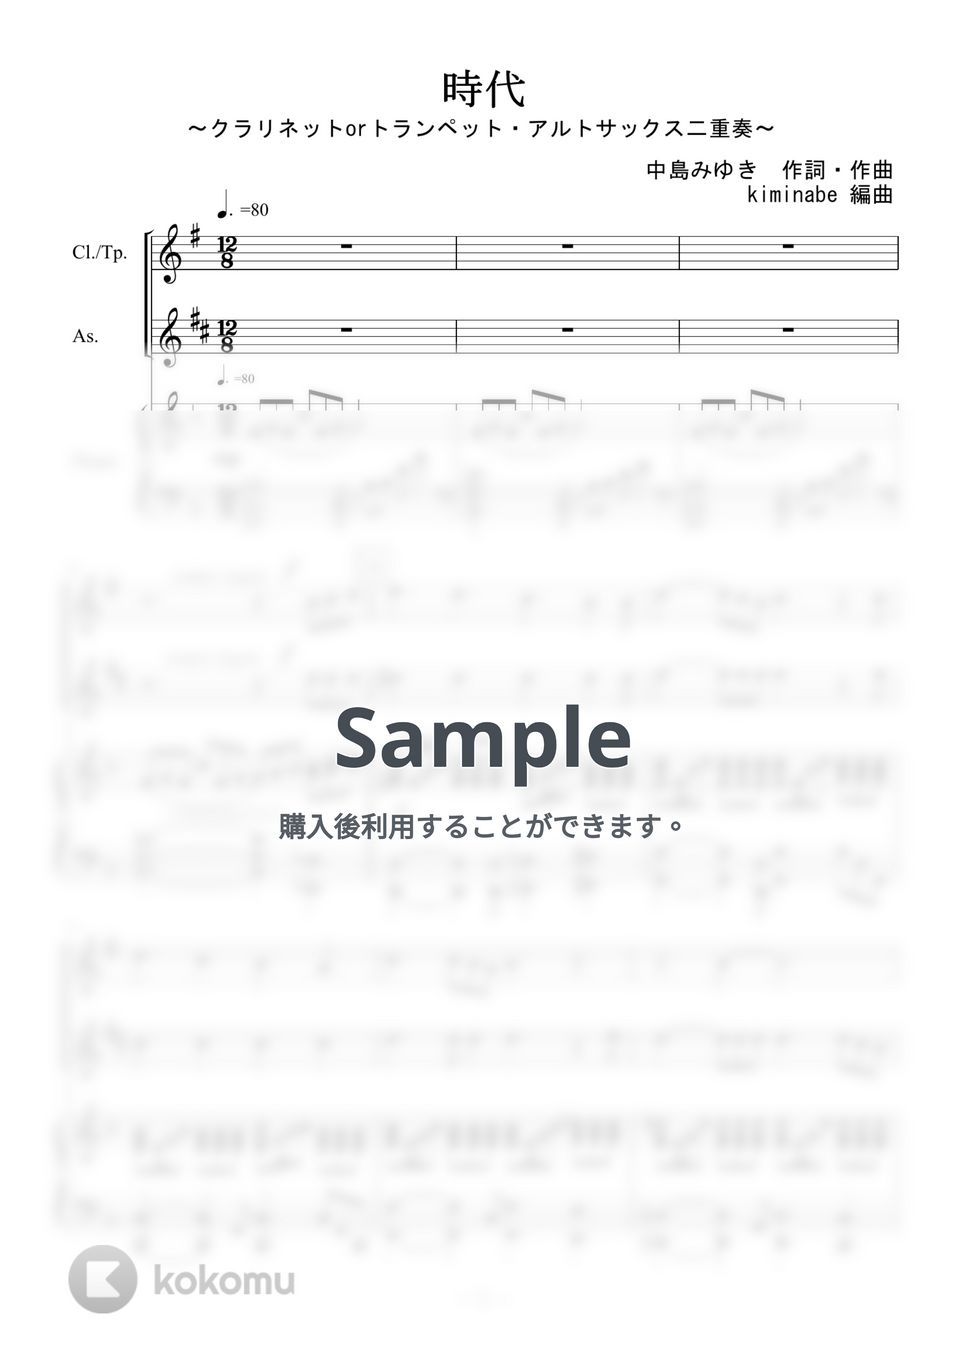 中島みゆき - 時代 (クラリネットorトランペット・アルトサックス二重奏) by kiminabe